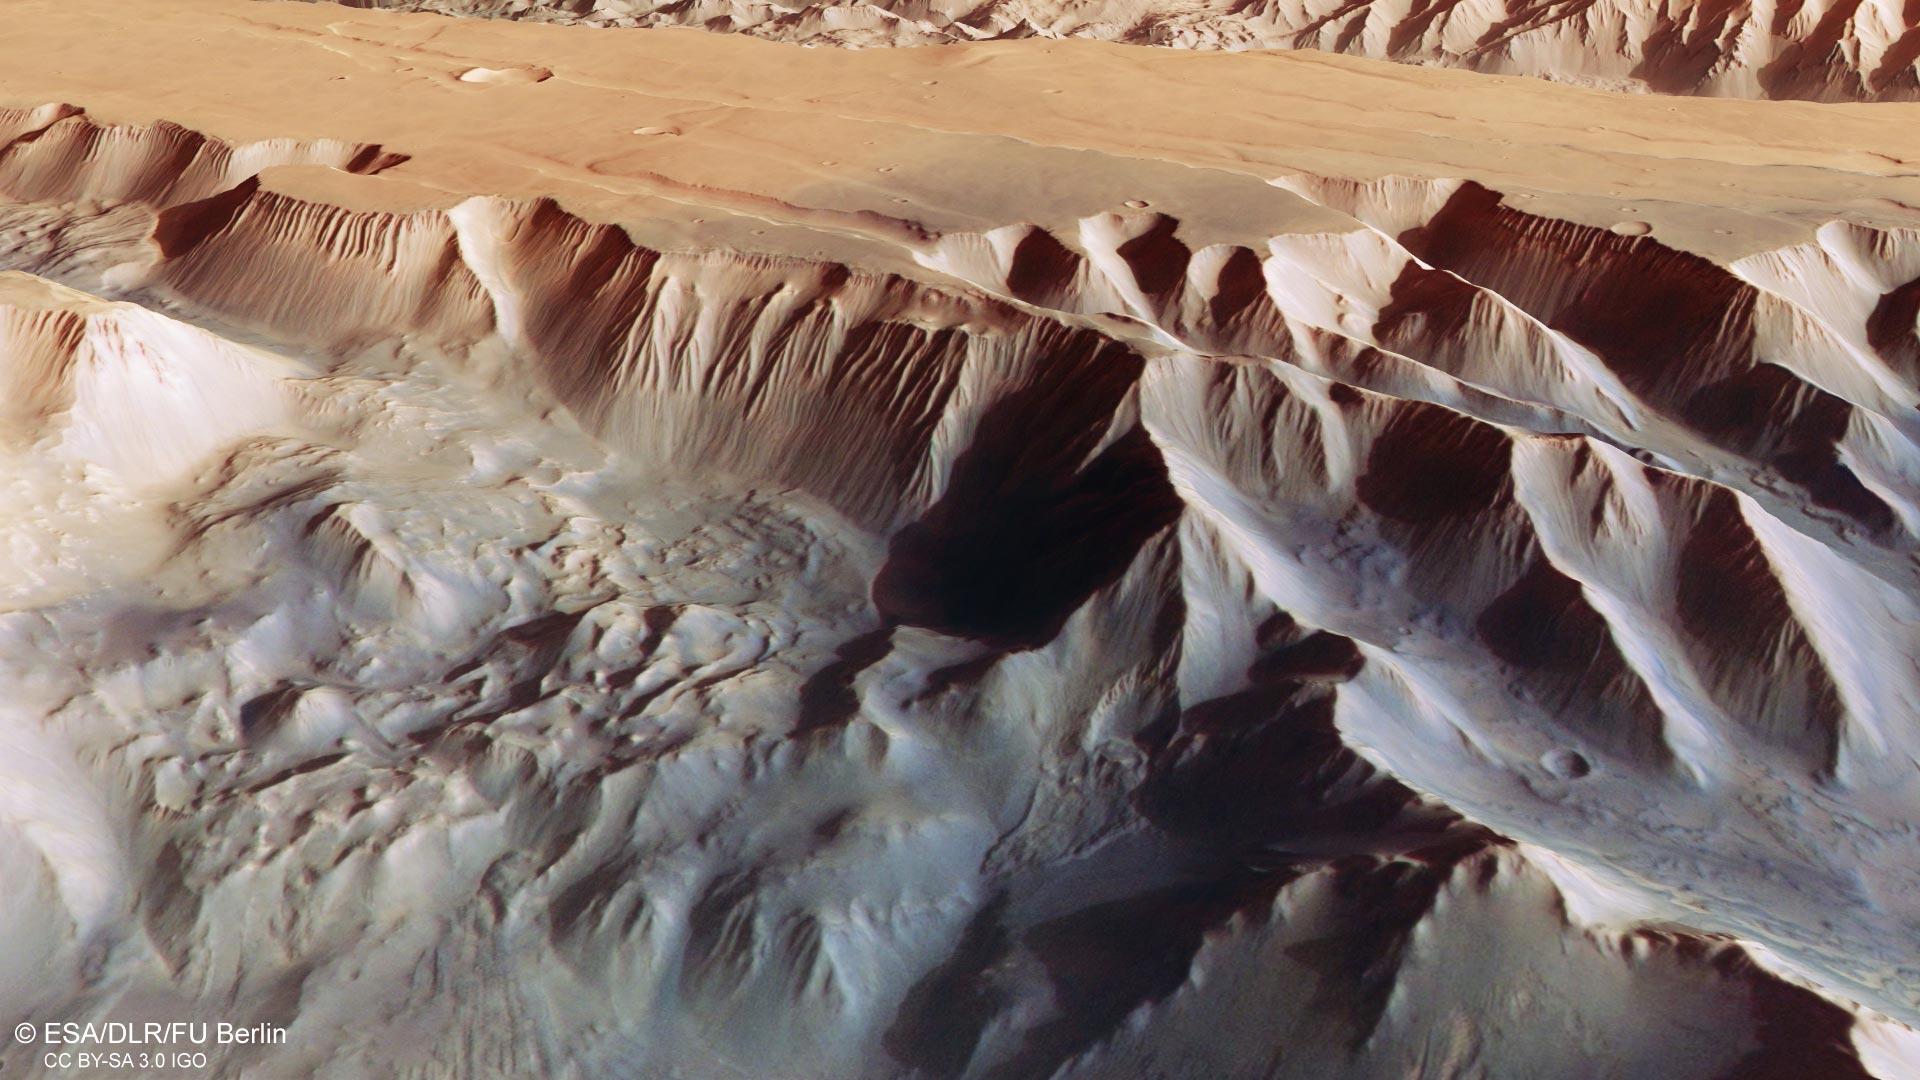 火星最深的峡谷图片